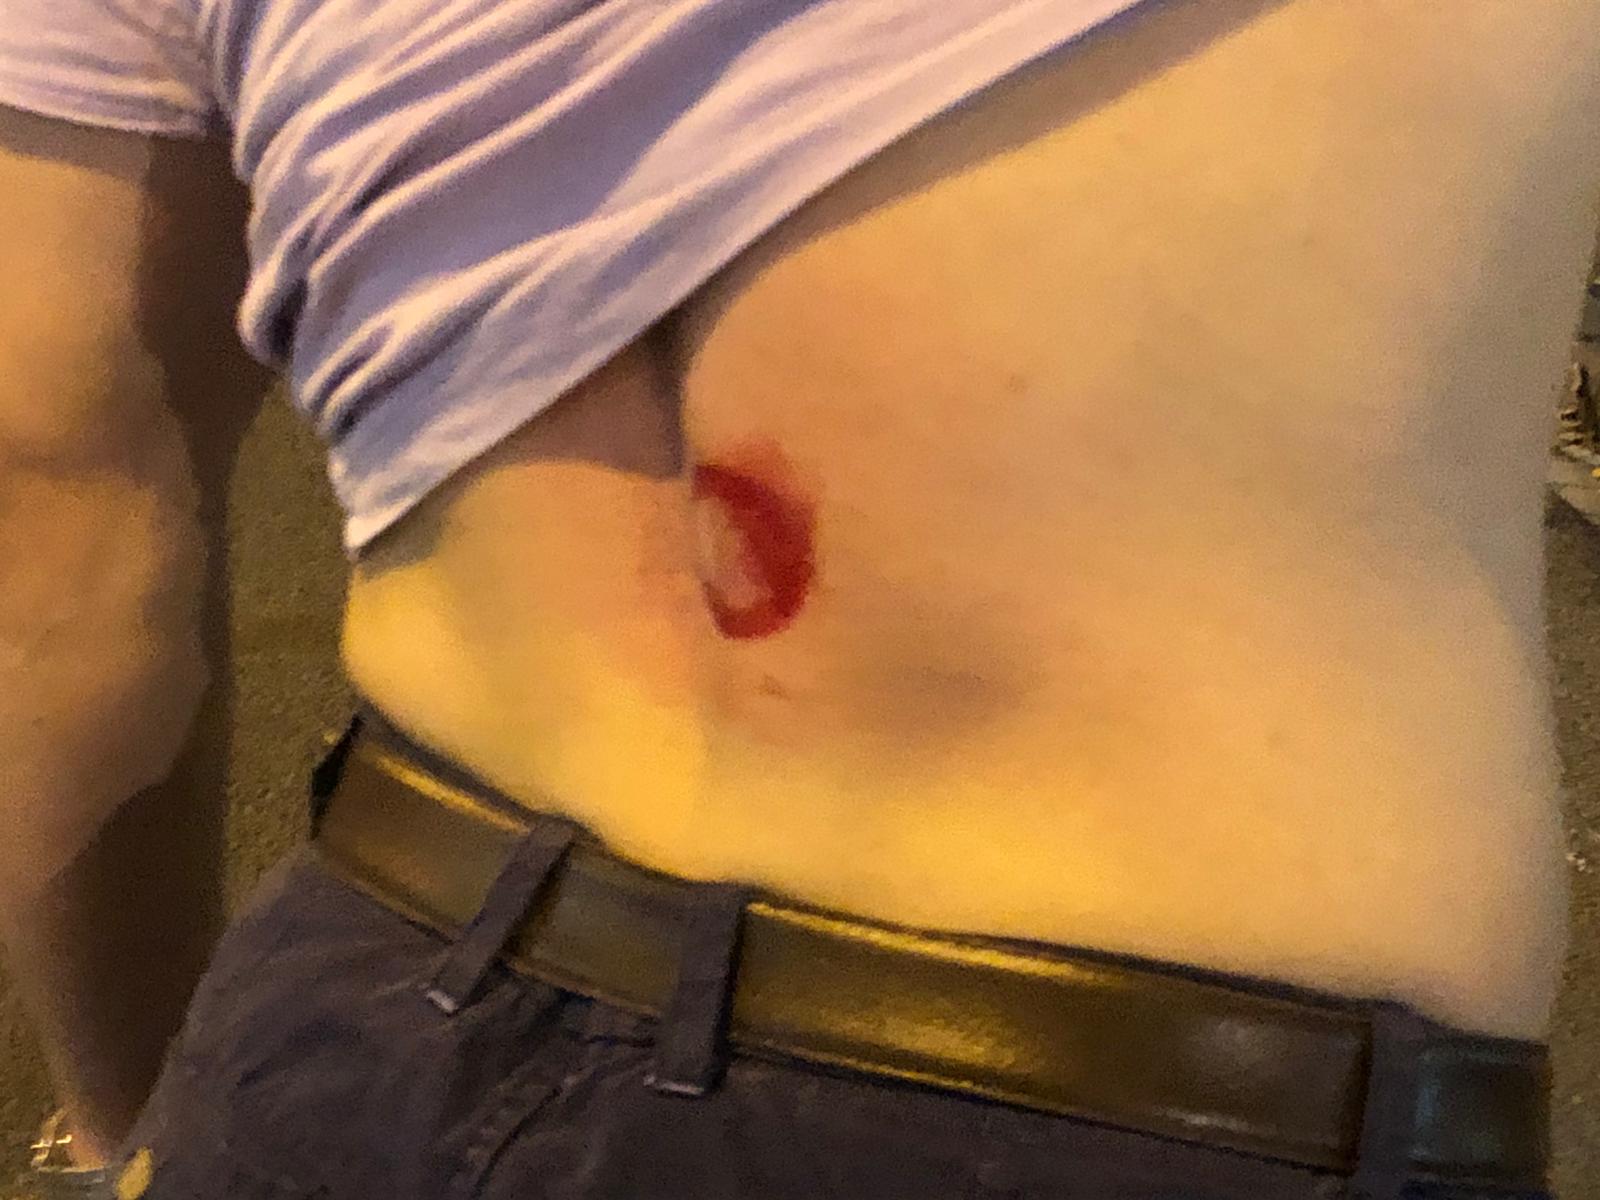 Herido por la policía: "Pasaba por la calle y he recibido un golpe en la espalda"